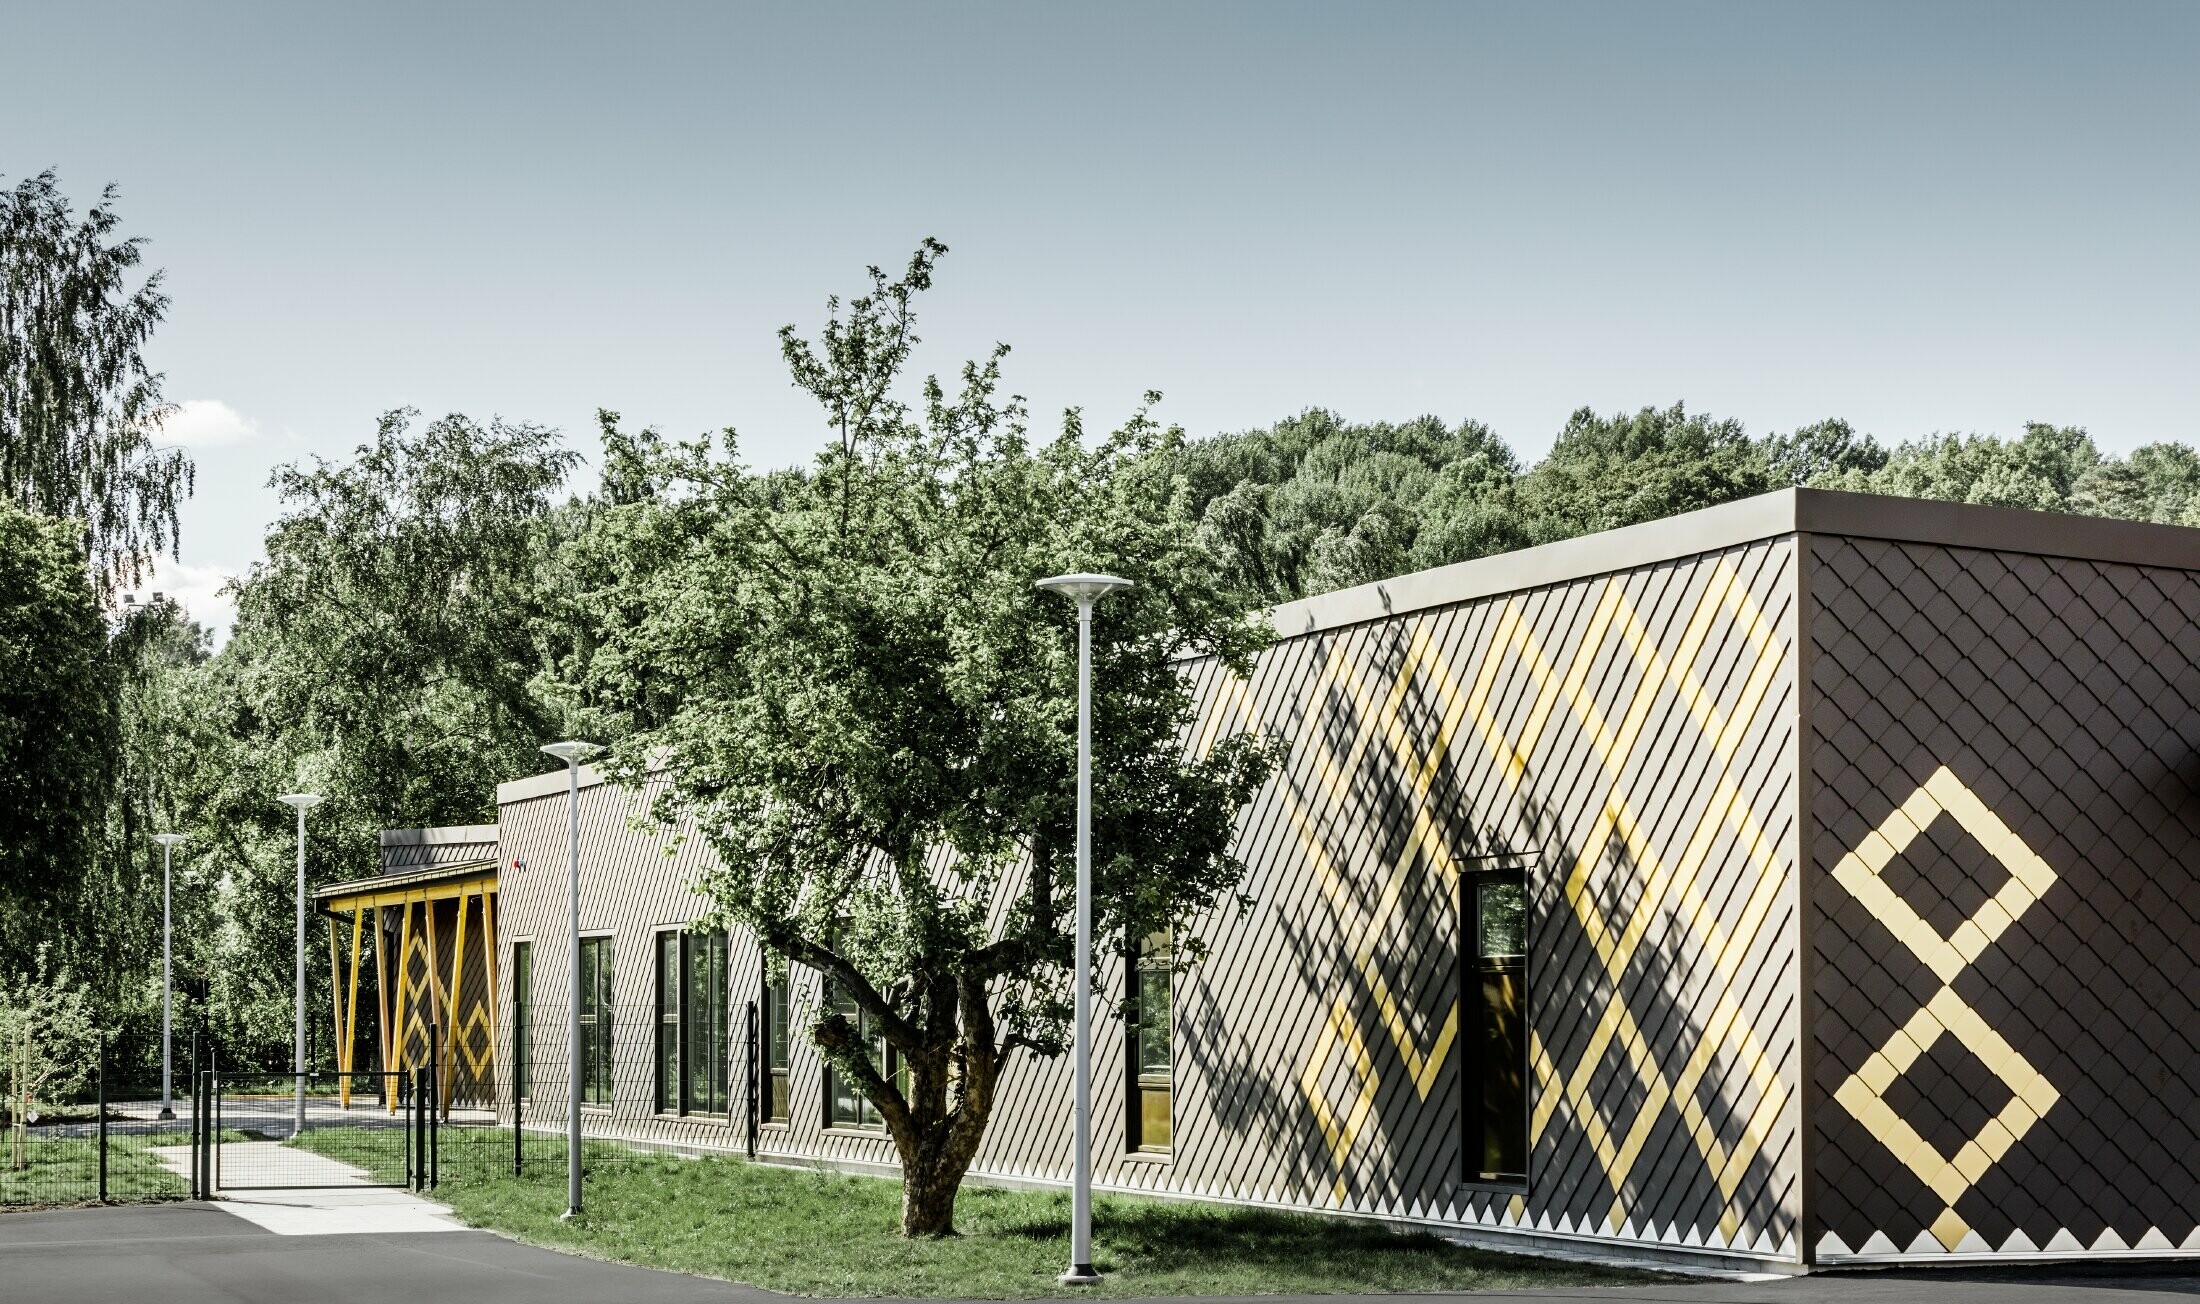 L’école maternelle de Stockholm a été habillée avec la solide façade en alu de PREFA. Les losanges couleurs brun et or maya donnent un motif intéressant.